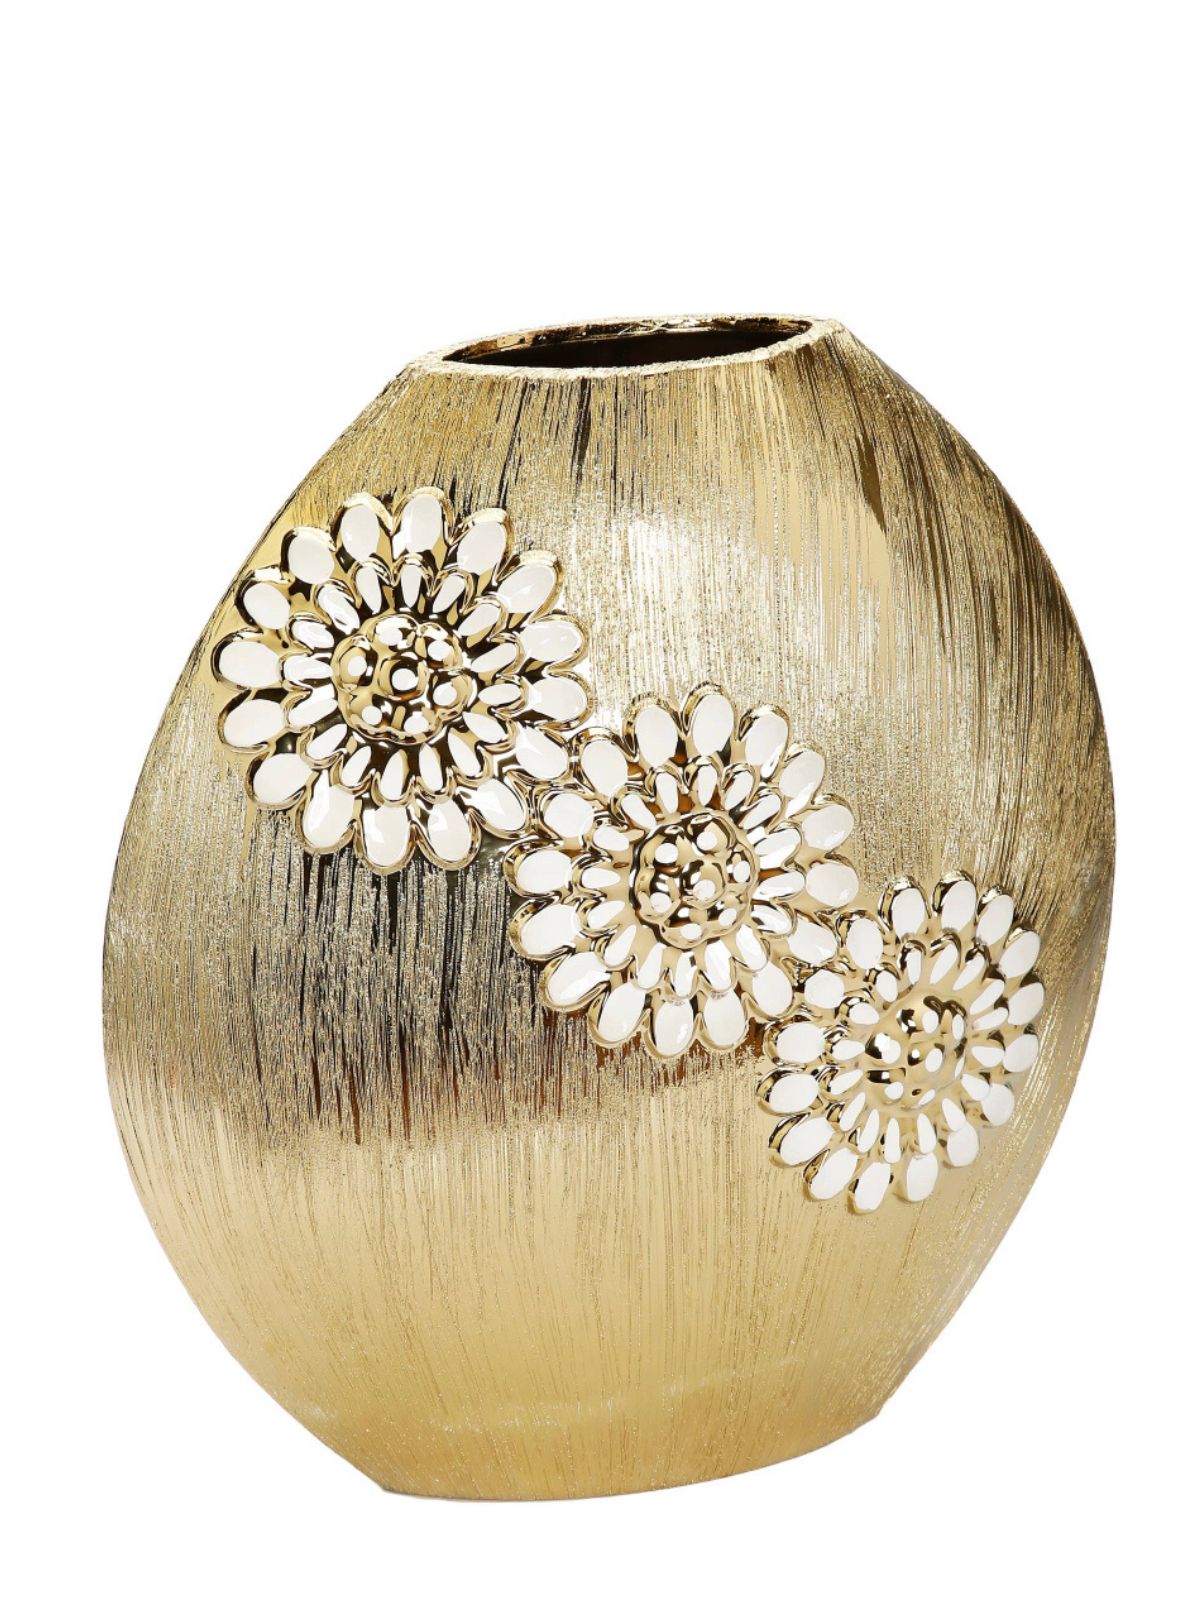 13H Luxury Round Matte Gold Ceramic Vase With White Textured Flower Design - KYA Home Decor. 